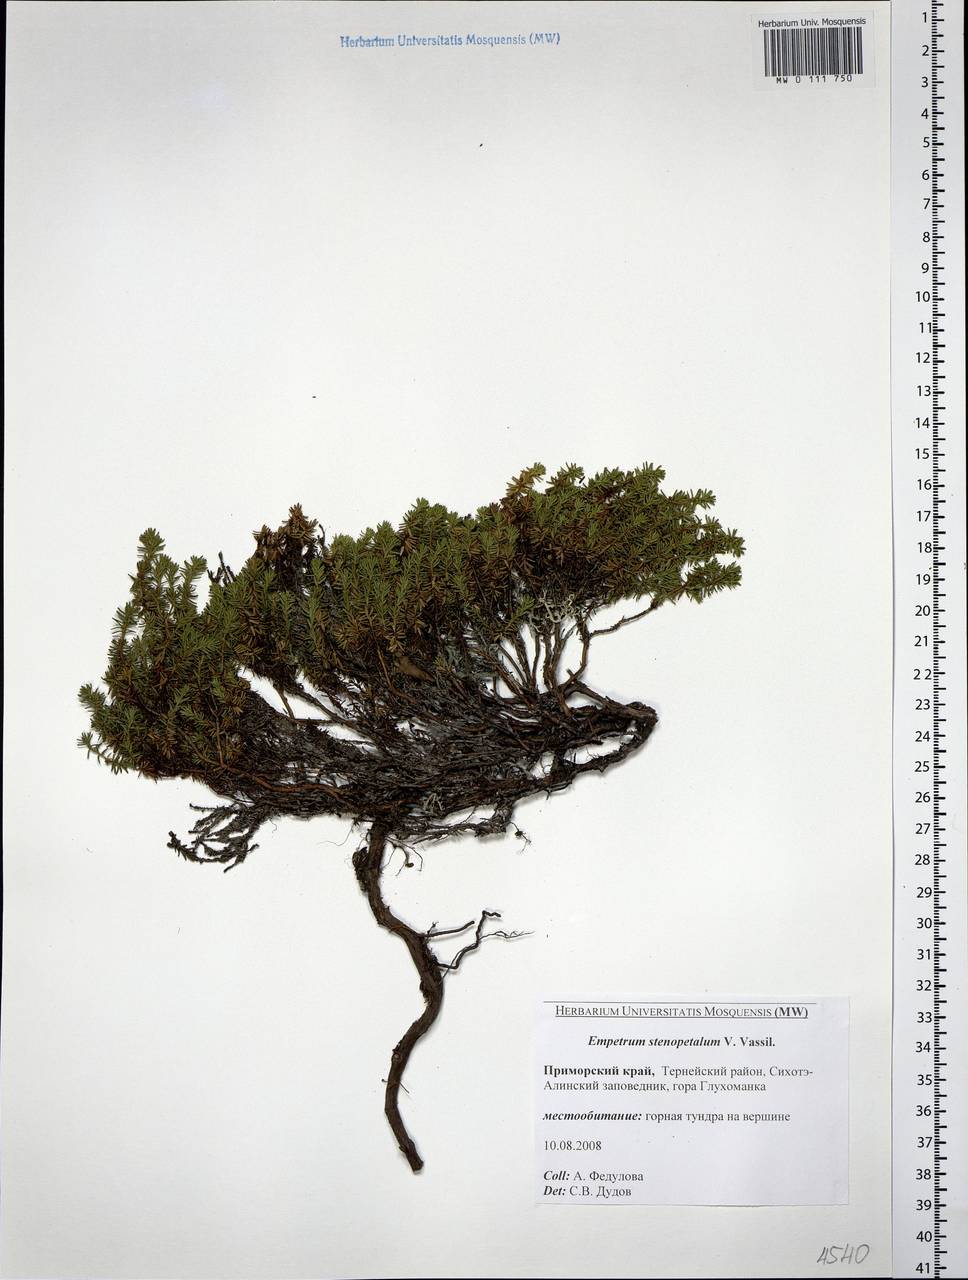 Empetrum nigrum subsp. sibiricum (V. N. Vassil.) Kuvaev, Siberia, Russian Far East (S6) (Russia)